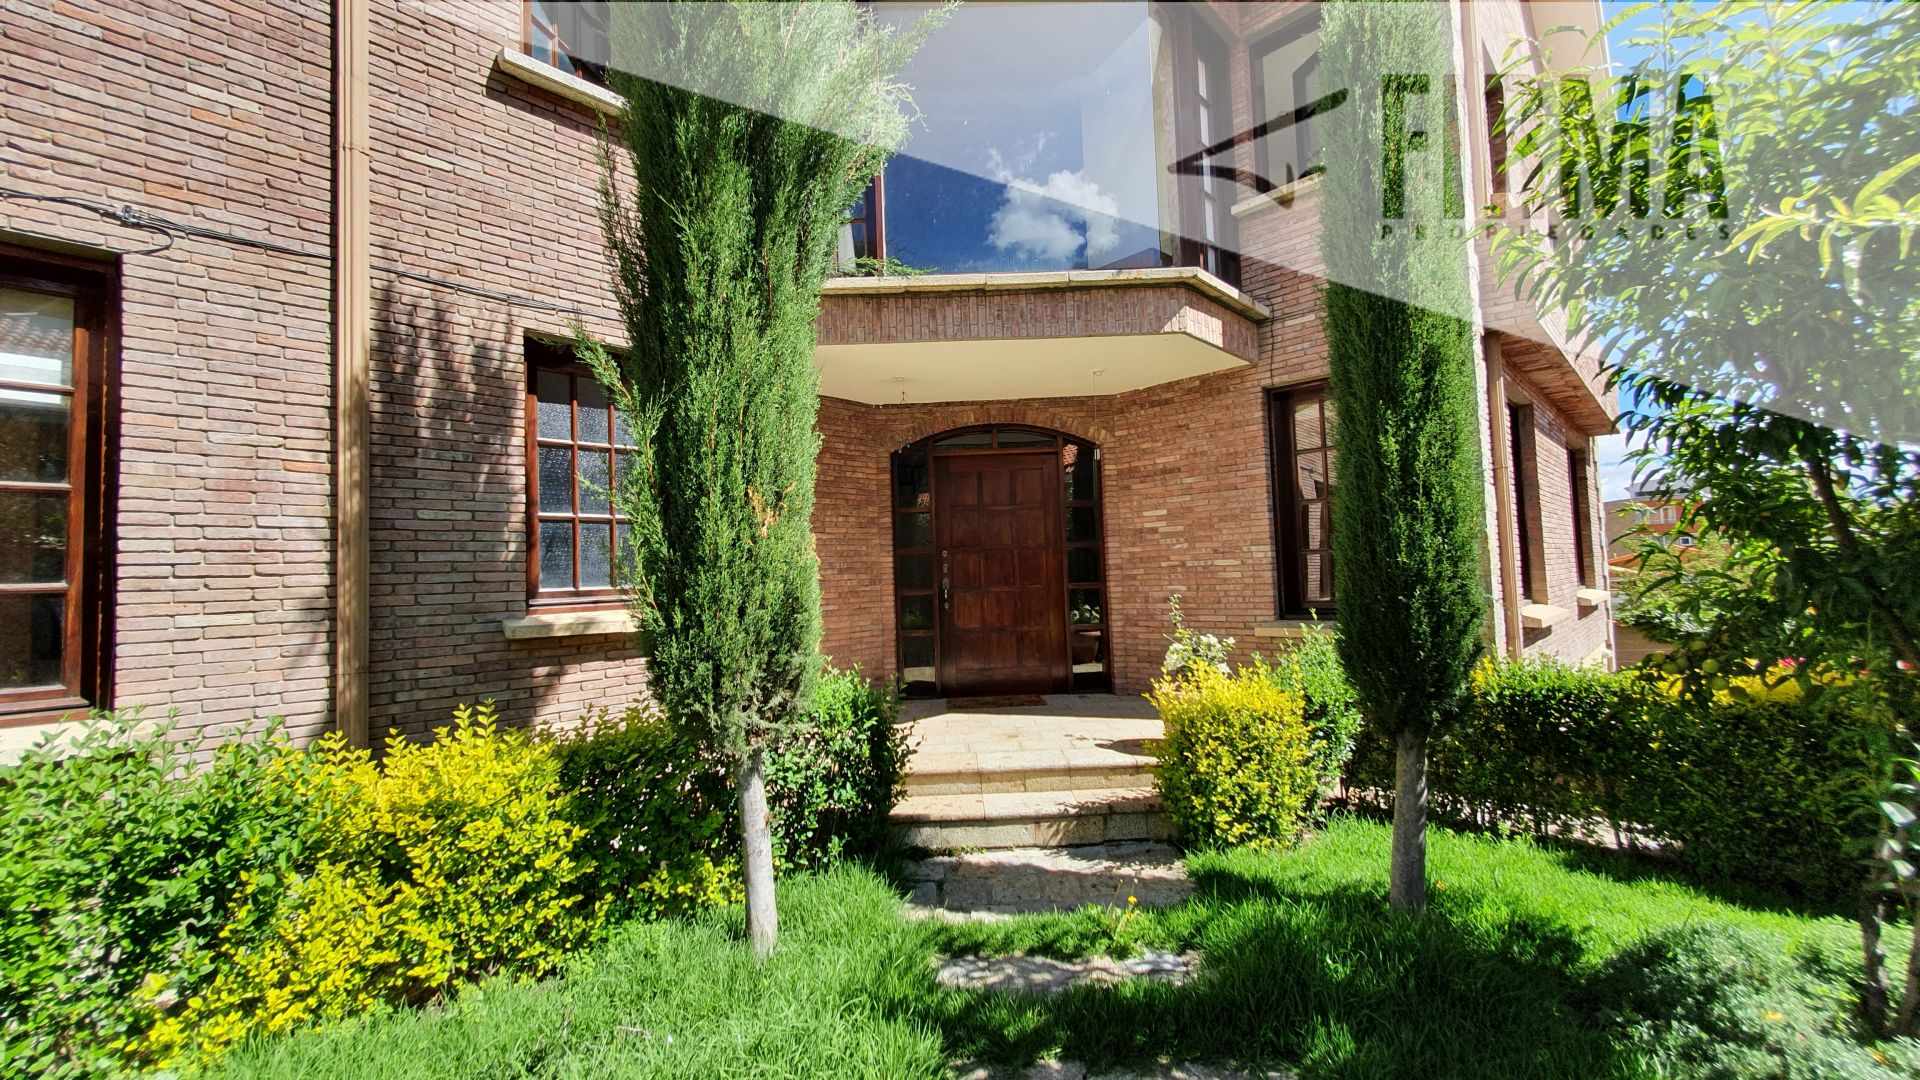 Casa Hermosa y soleada casa en Alquiler o Venta, ubicada en la calle 31 a dos cuadras de la Avenida principal.
 Foto 6